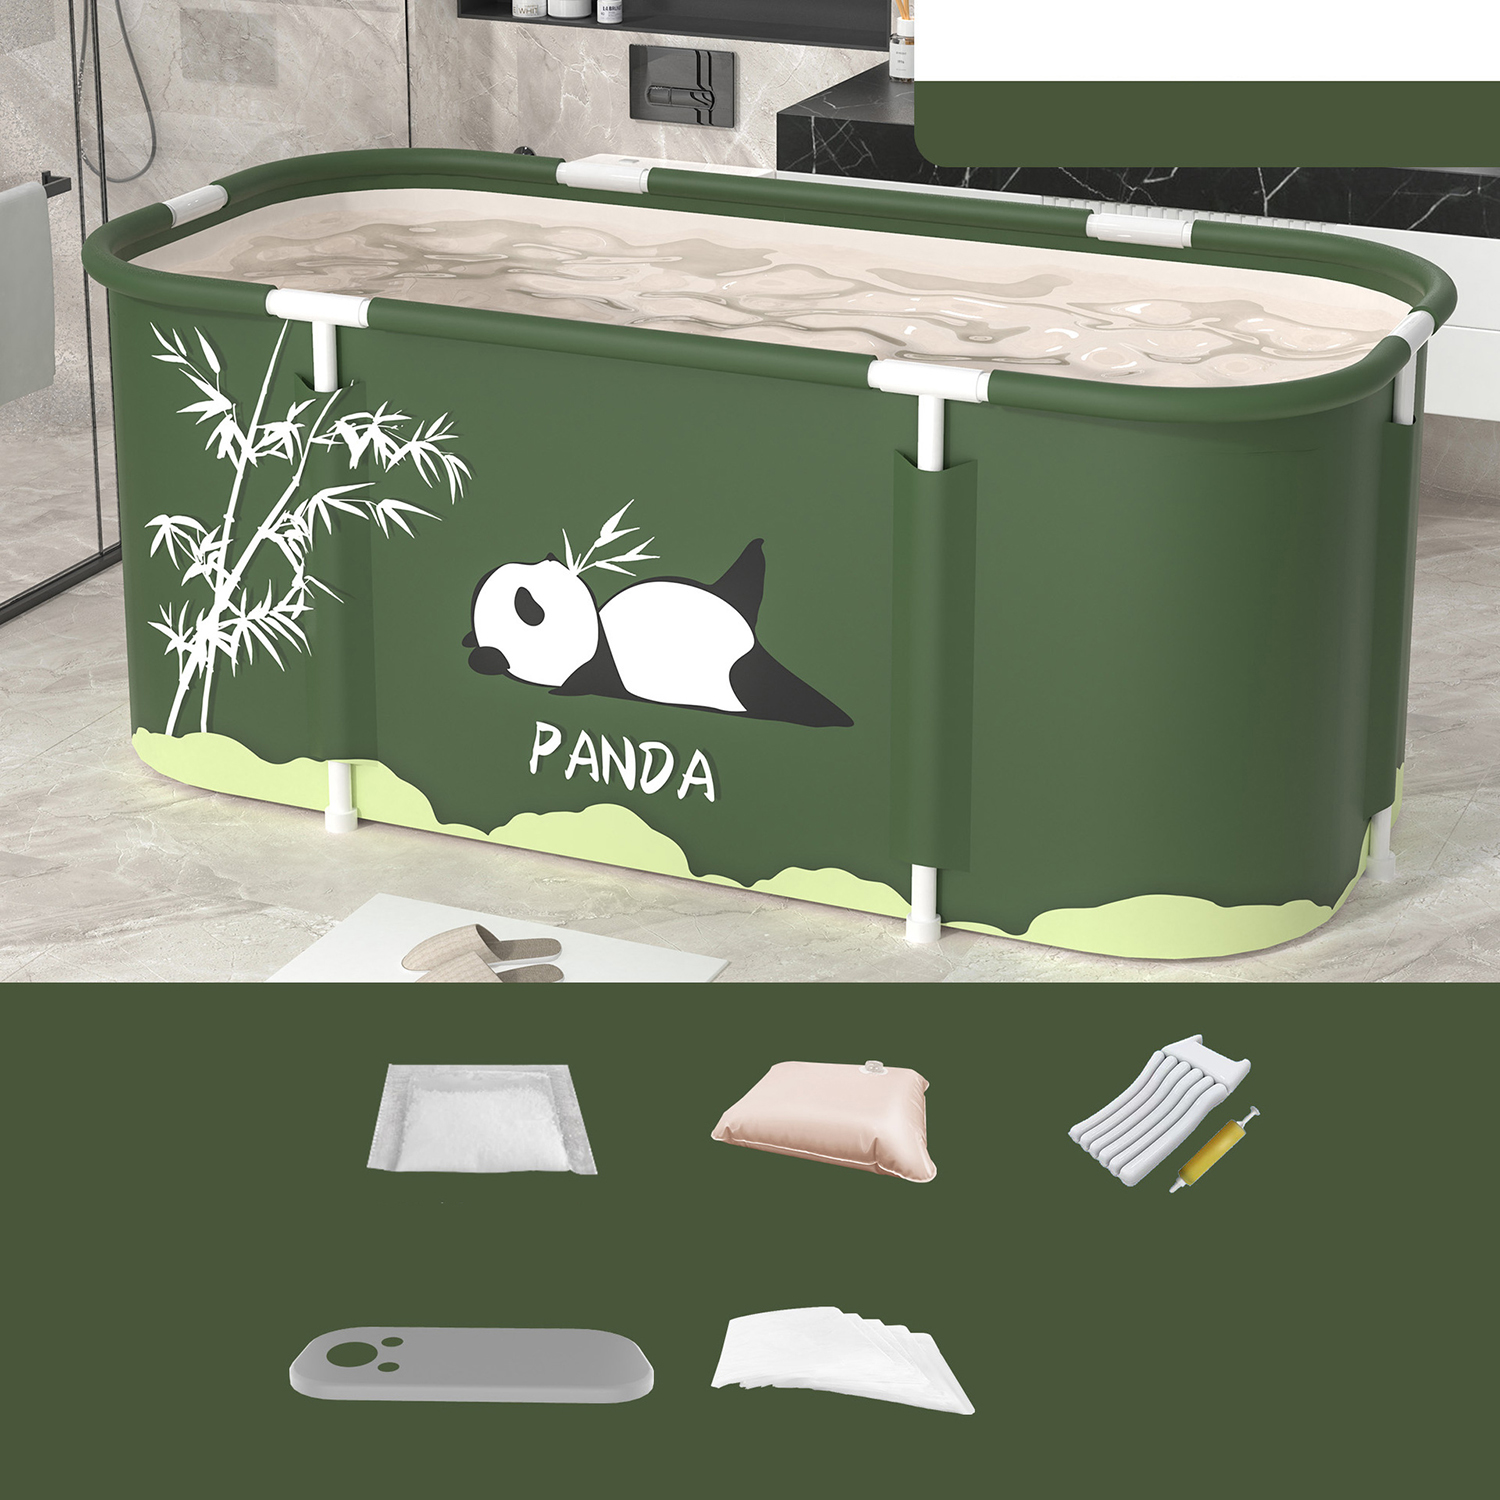 Panda  Set 2: Standard cushion, pump, bath cover, bath bag *10